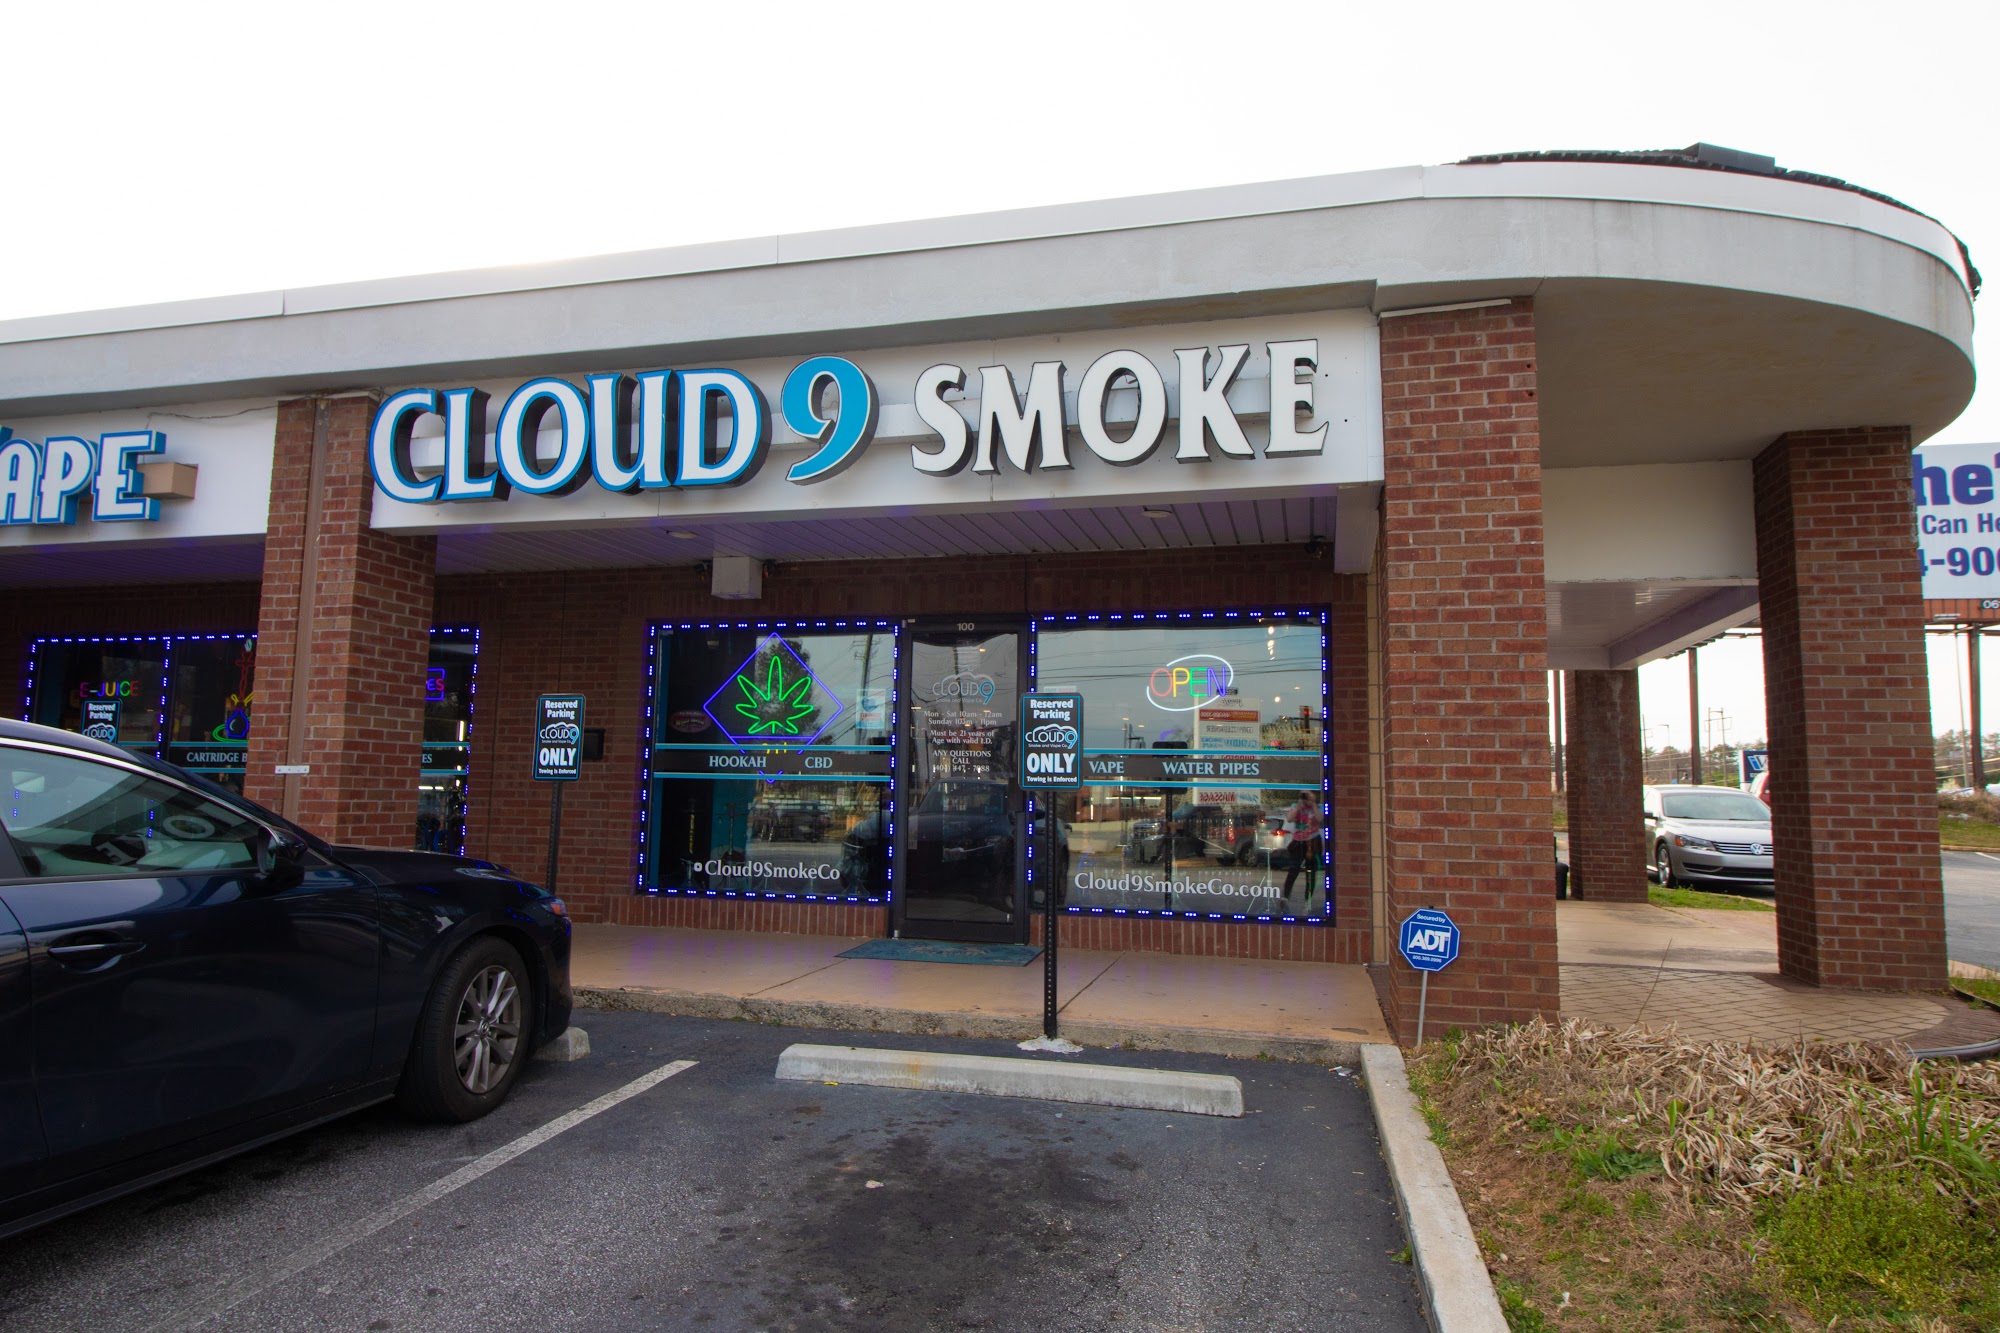 Cloud 9 Smoke, Vape, & Hookah Co. - Windy Hill